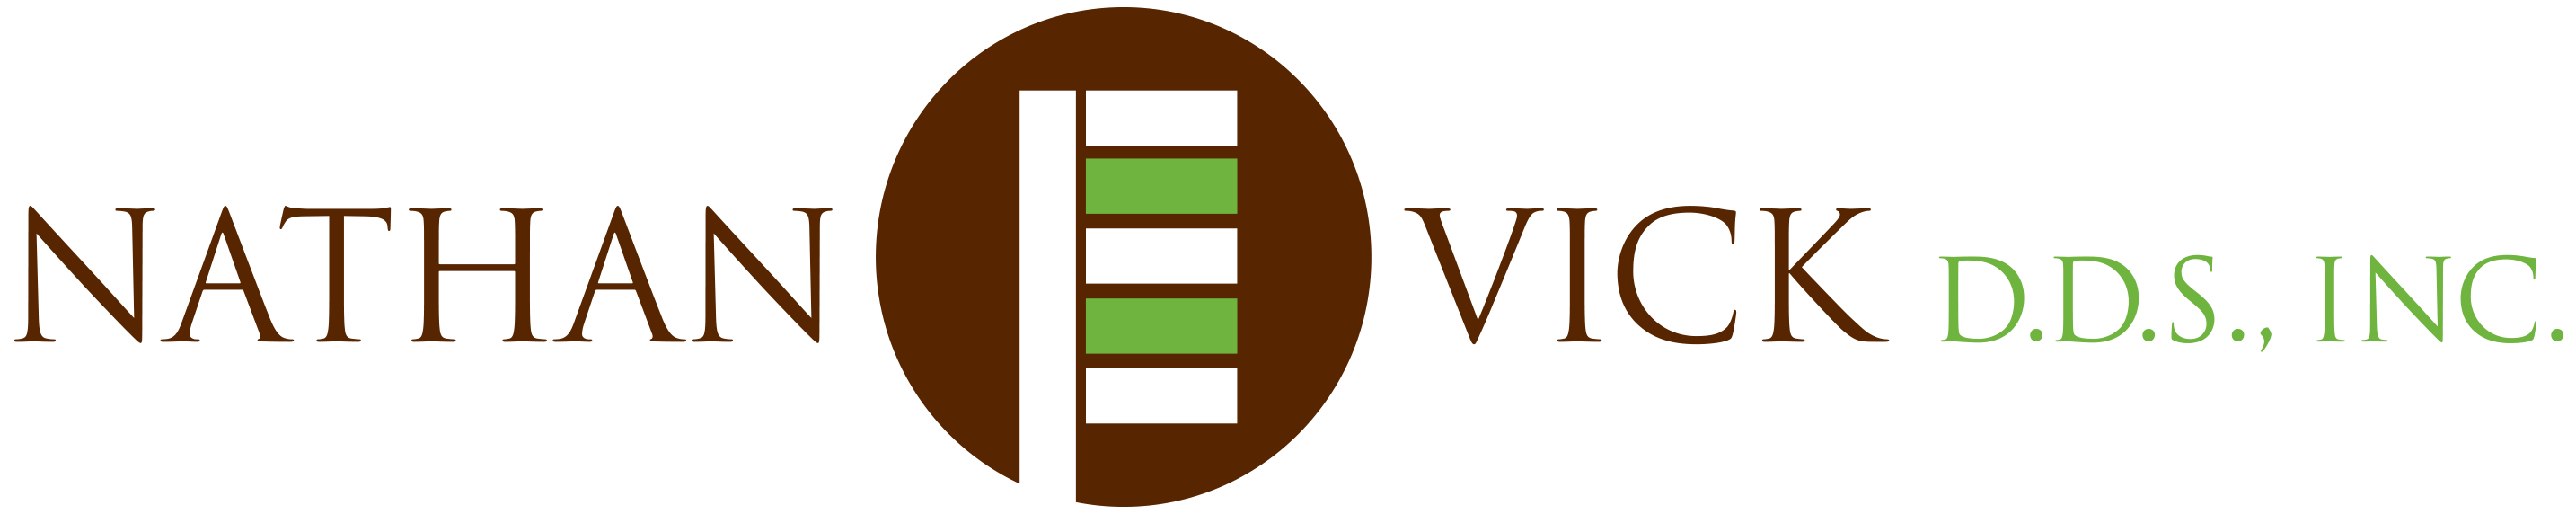 Nathan E. Vick, D.D.S., Inc. Logo